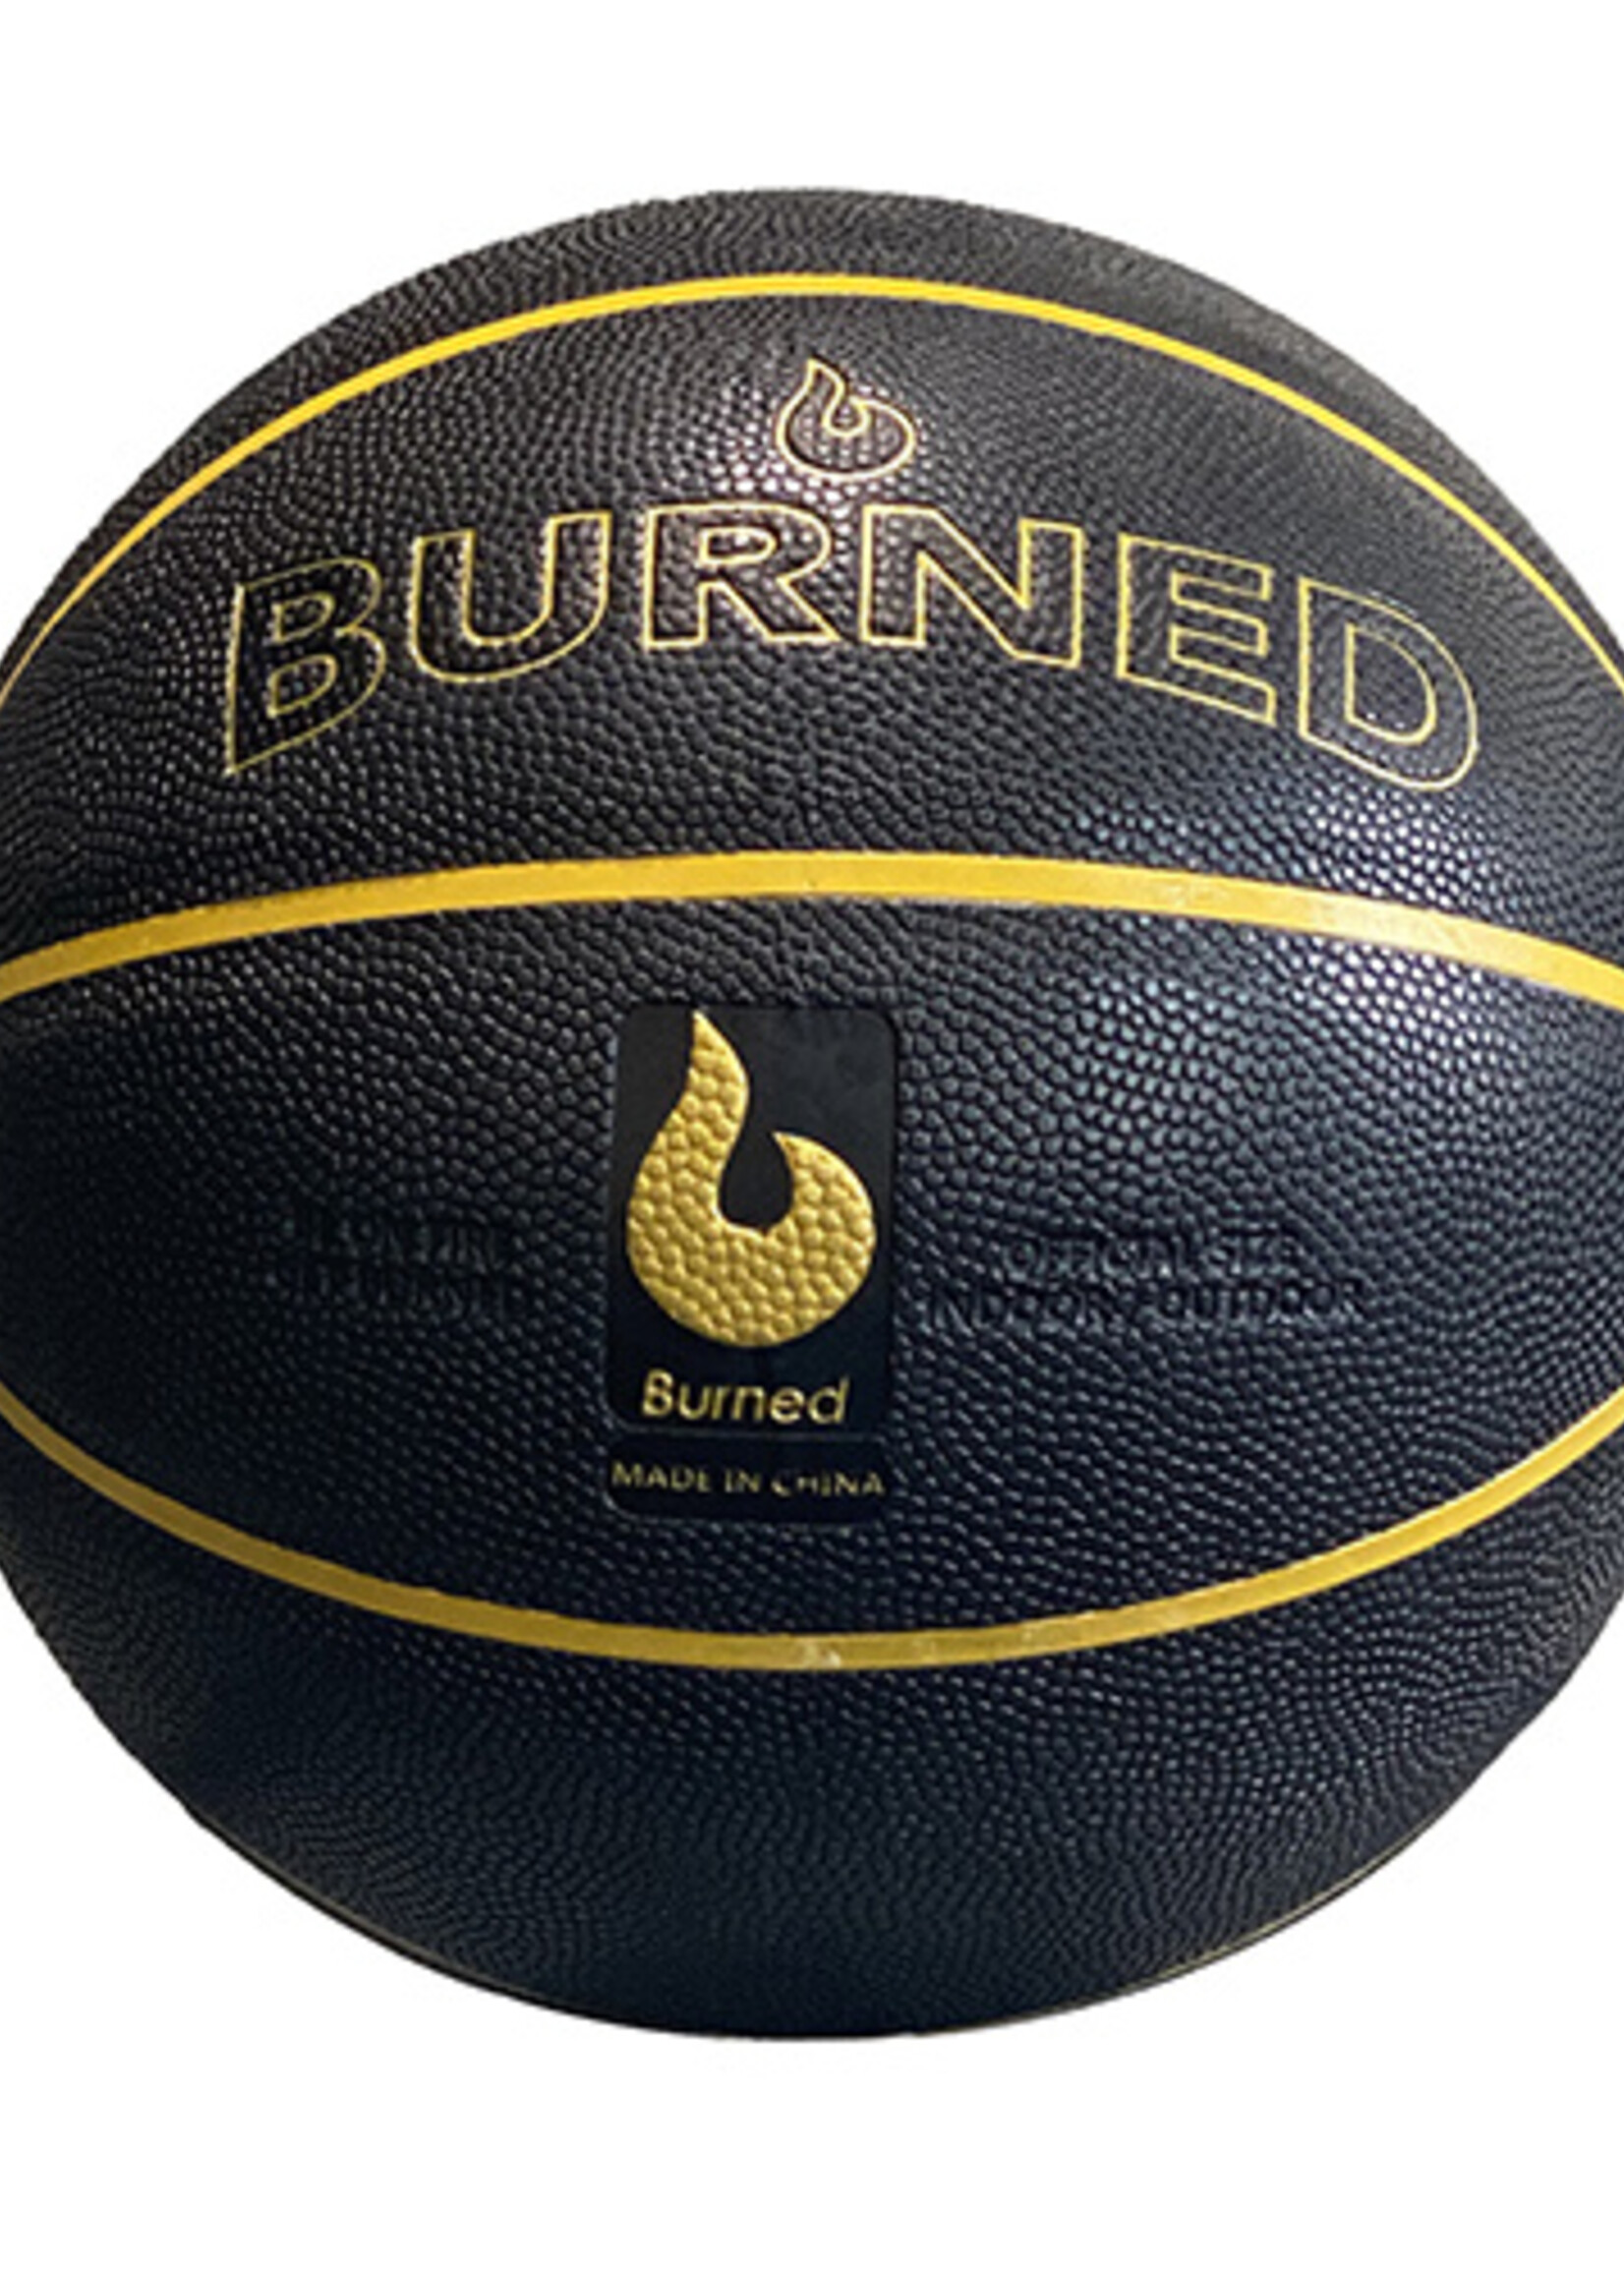 Burned Burned In/Out Basketbal Zwart Goud (7)